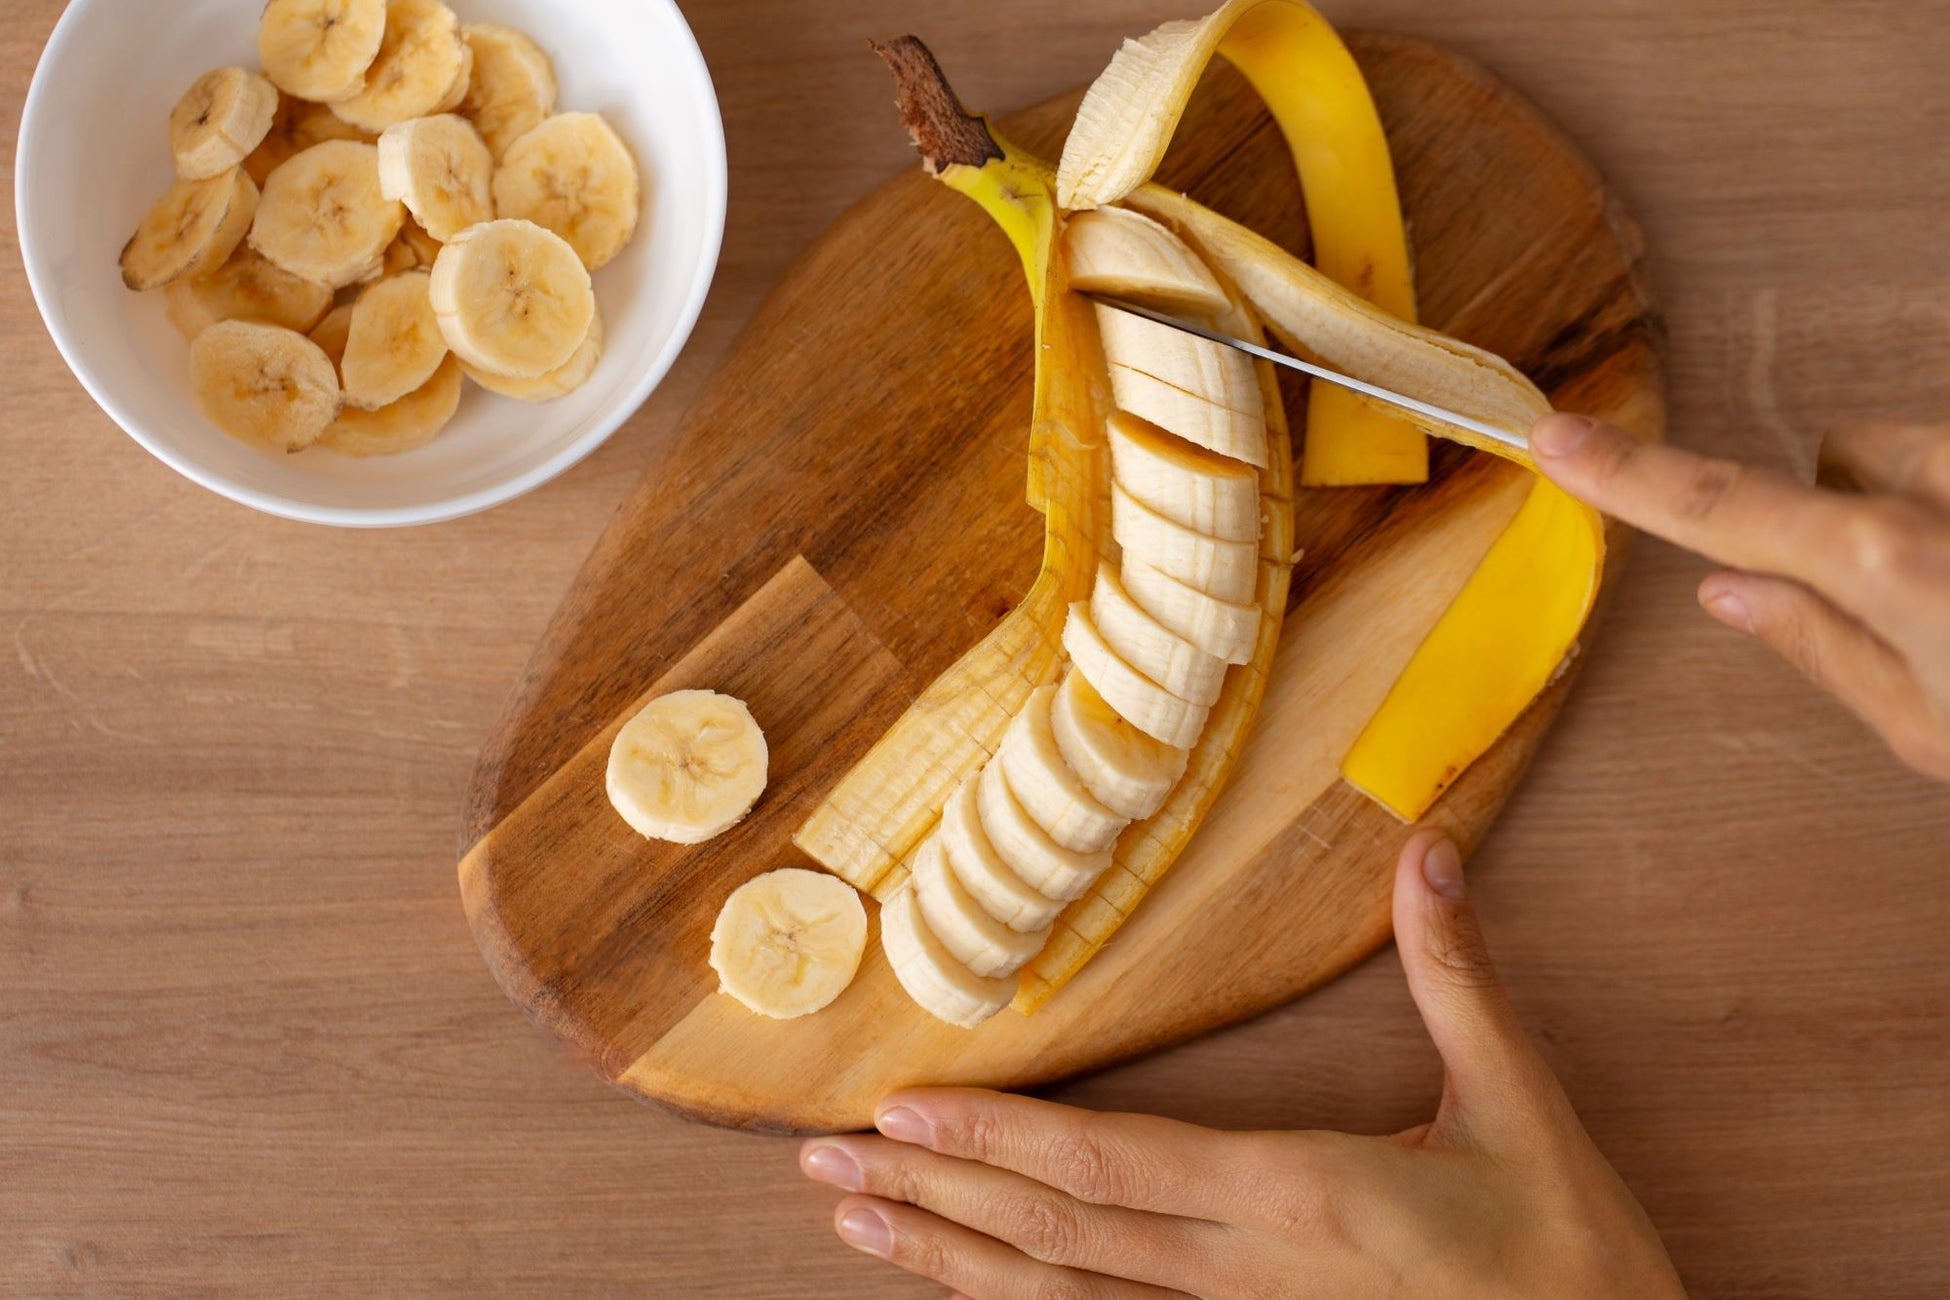 「朝バナナ」、血糖の急上昇が起きにくい可能性を示唆　2週間毎朝バナナ摂取で平均血糖値が下がる傾向も確認